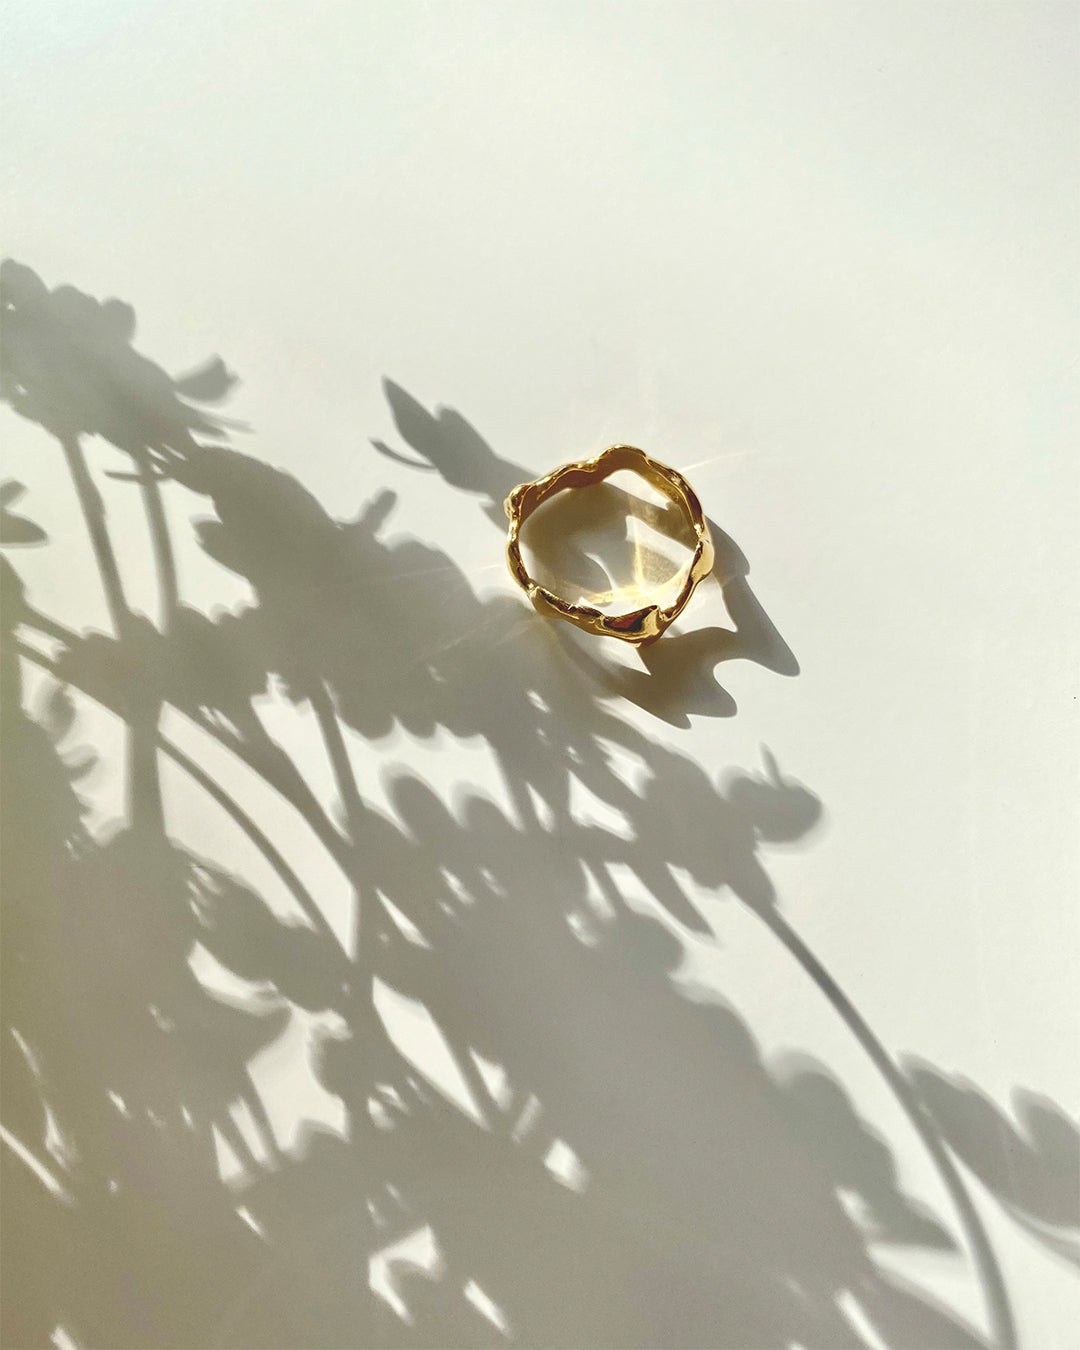 IDAMARI Himmin Ring in Gold available at Lahn.shop